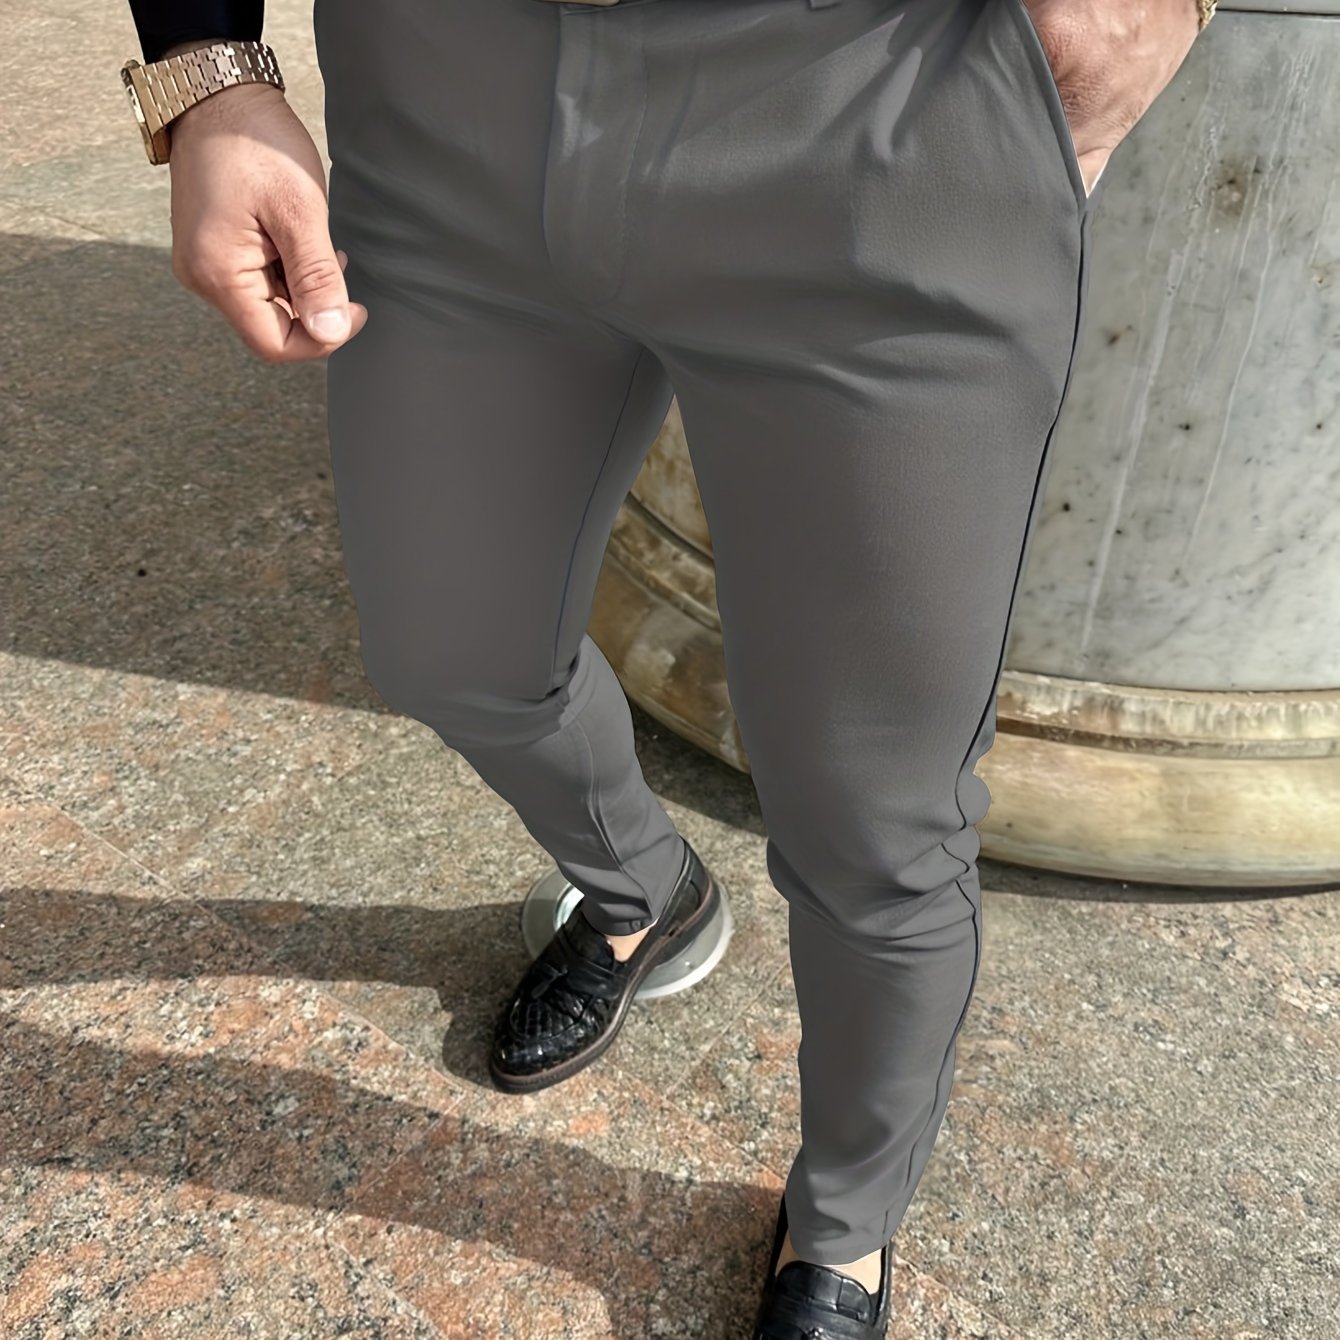 Taupe lightweight stretch pant Slim fit, Le 31, Shop Men's Dress Pants